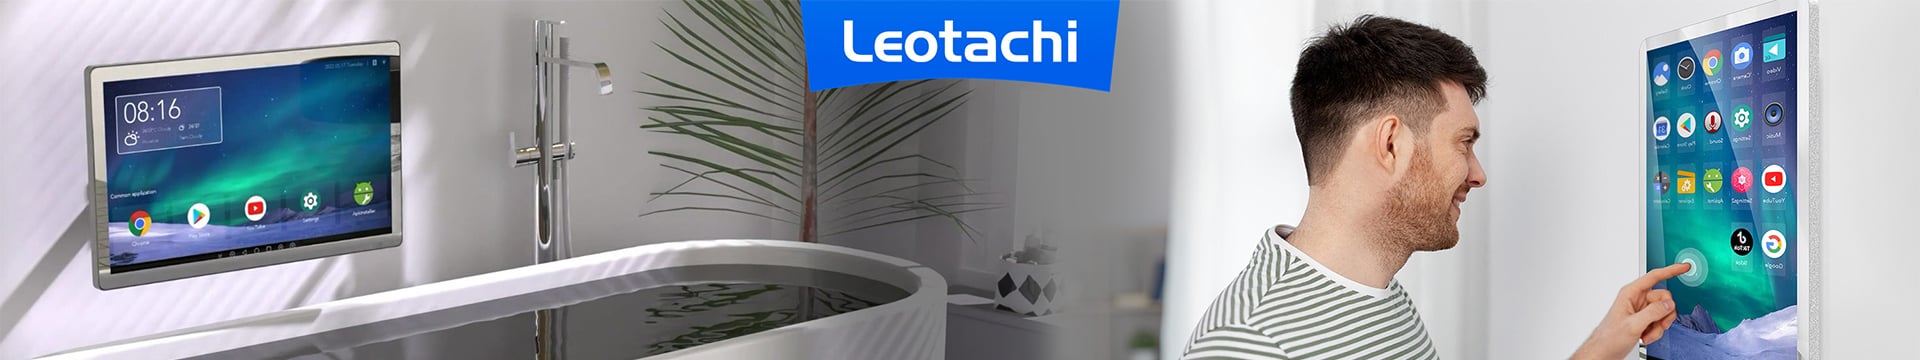 Leotachi TV